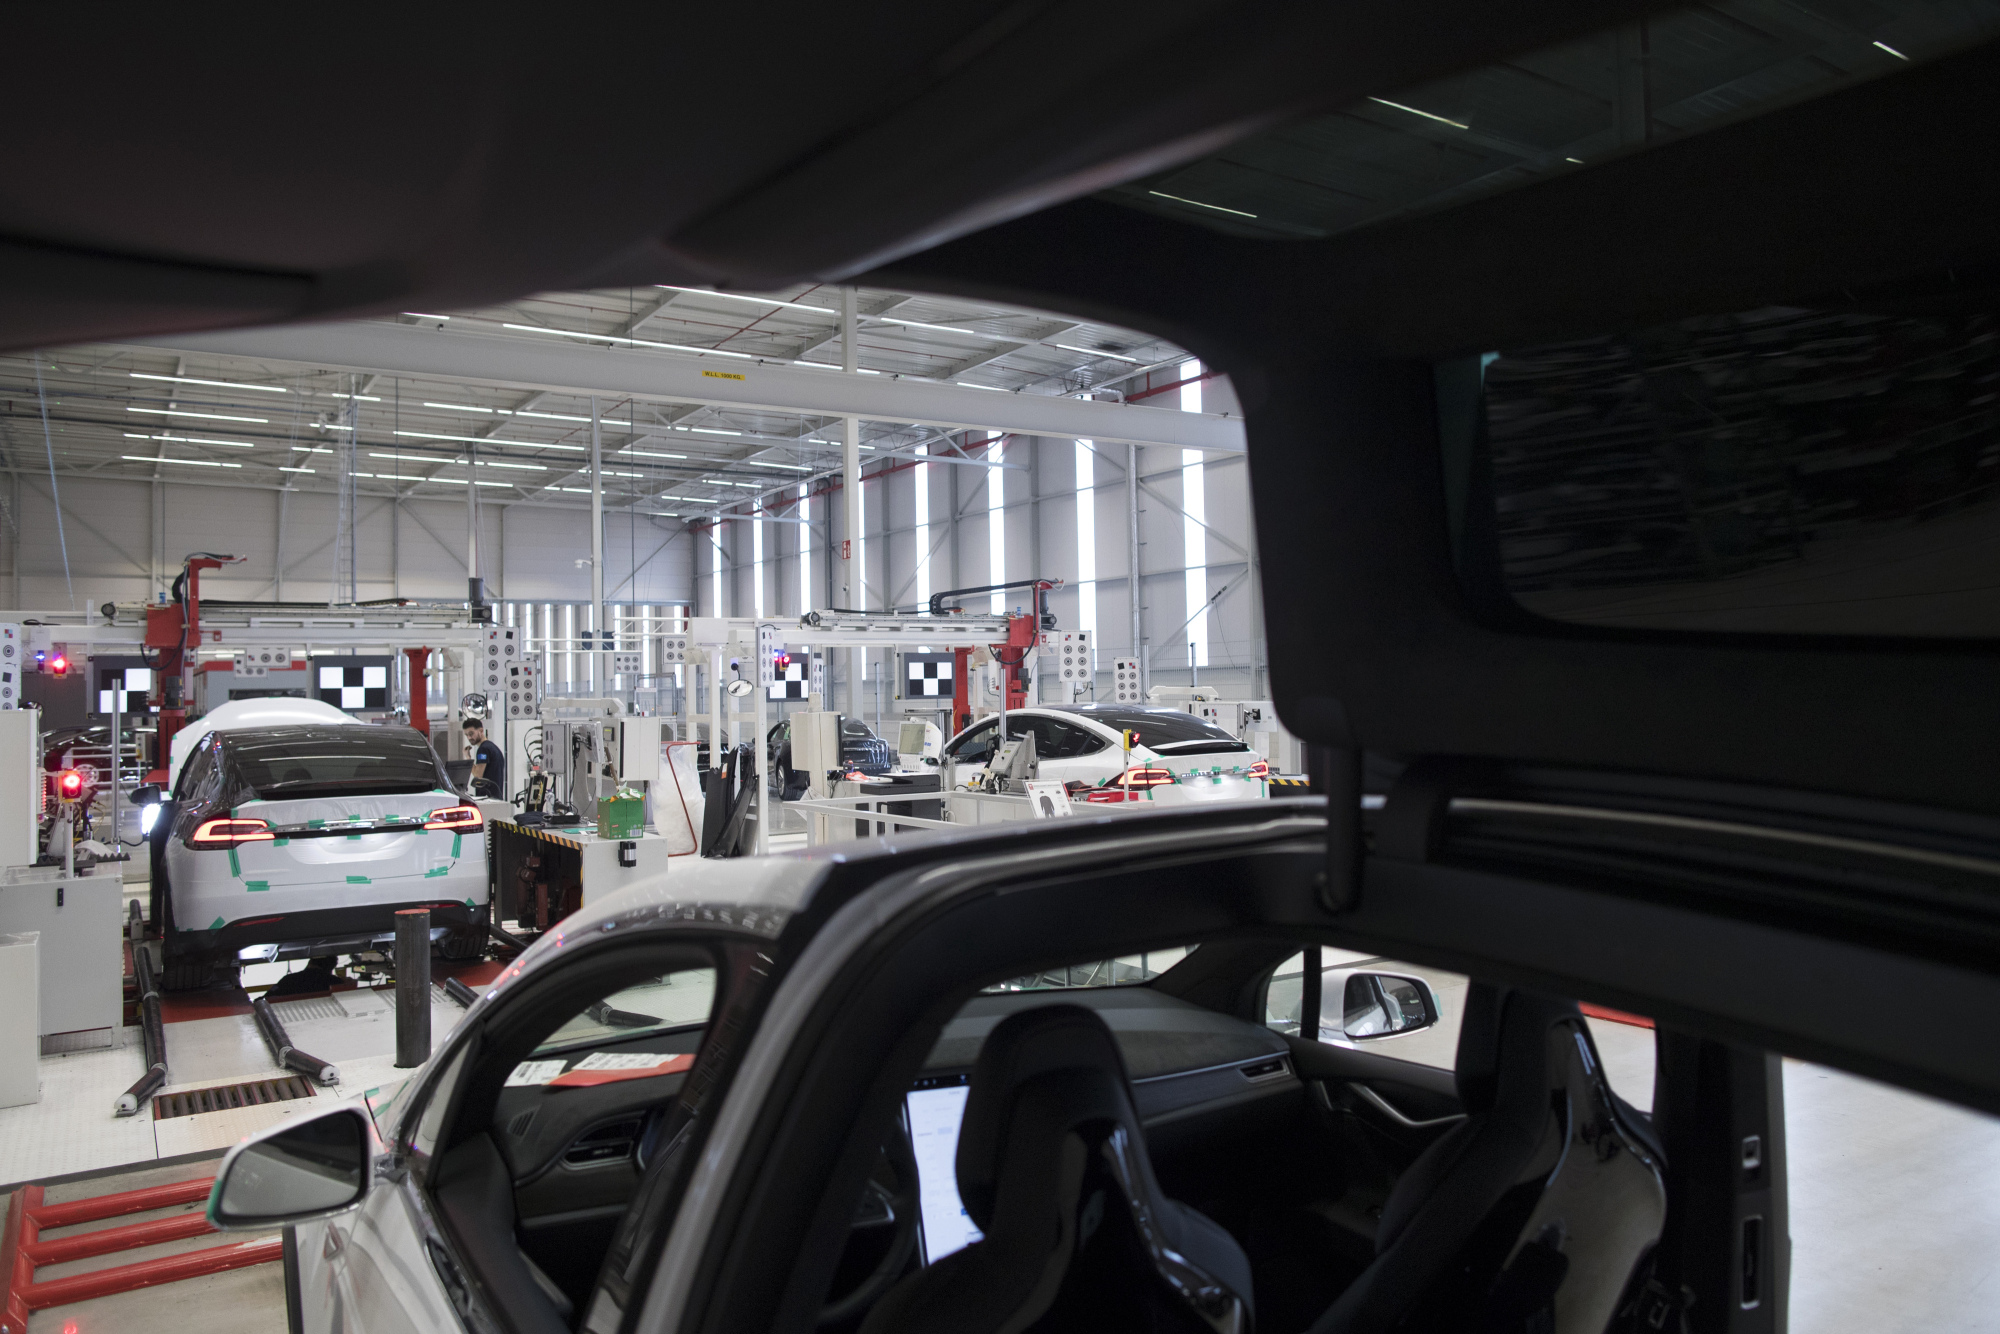 Tesla Model X SUV Assembly Inside A Tesla Motors Inc. Factory